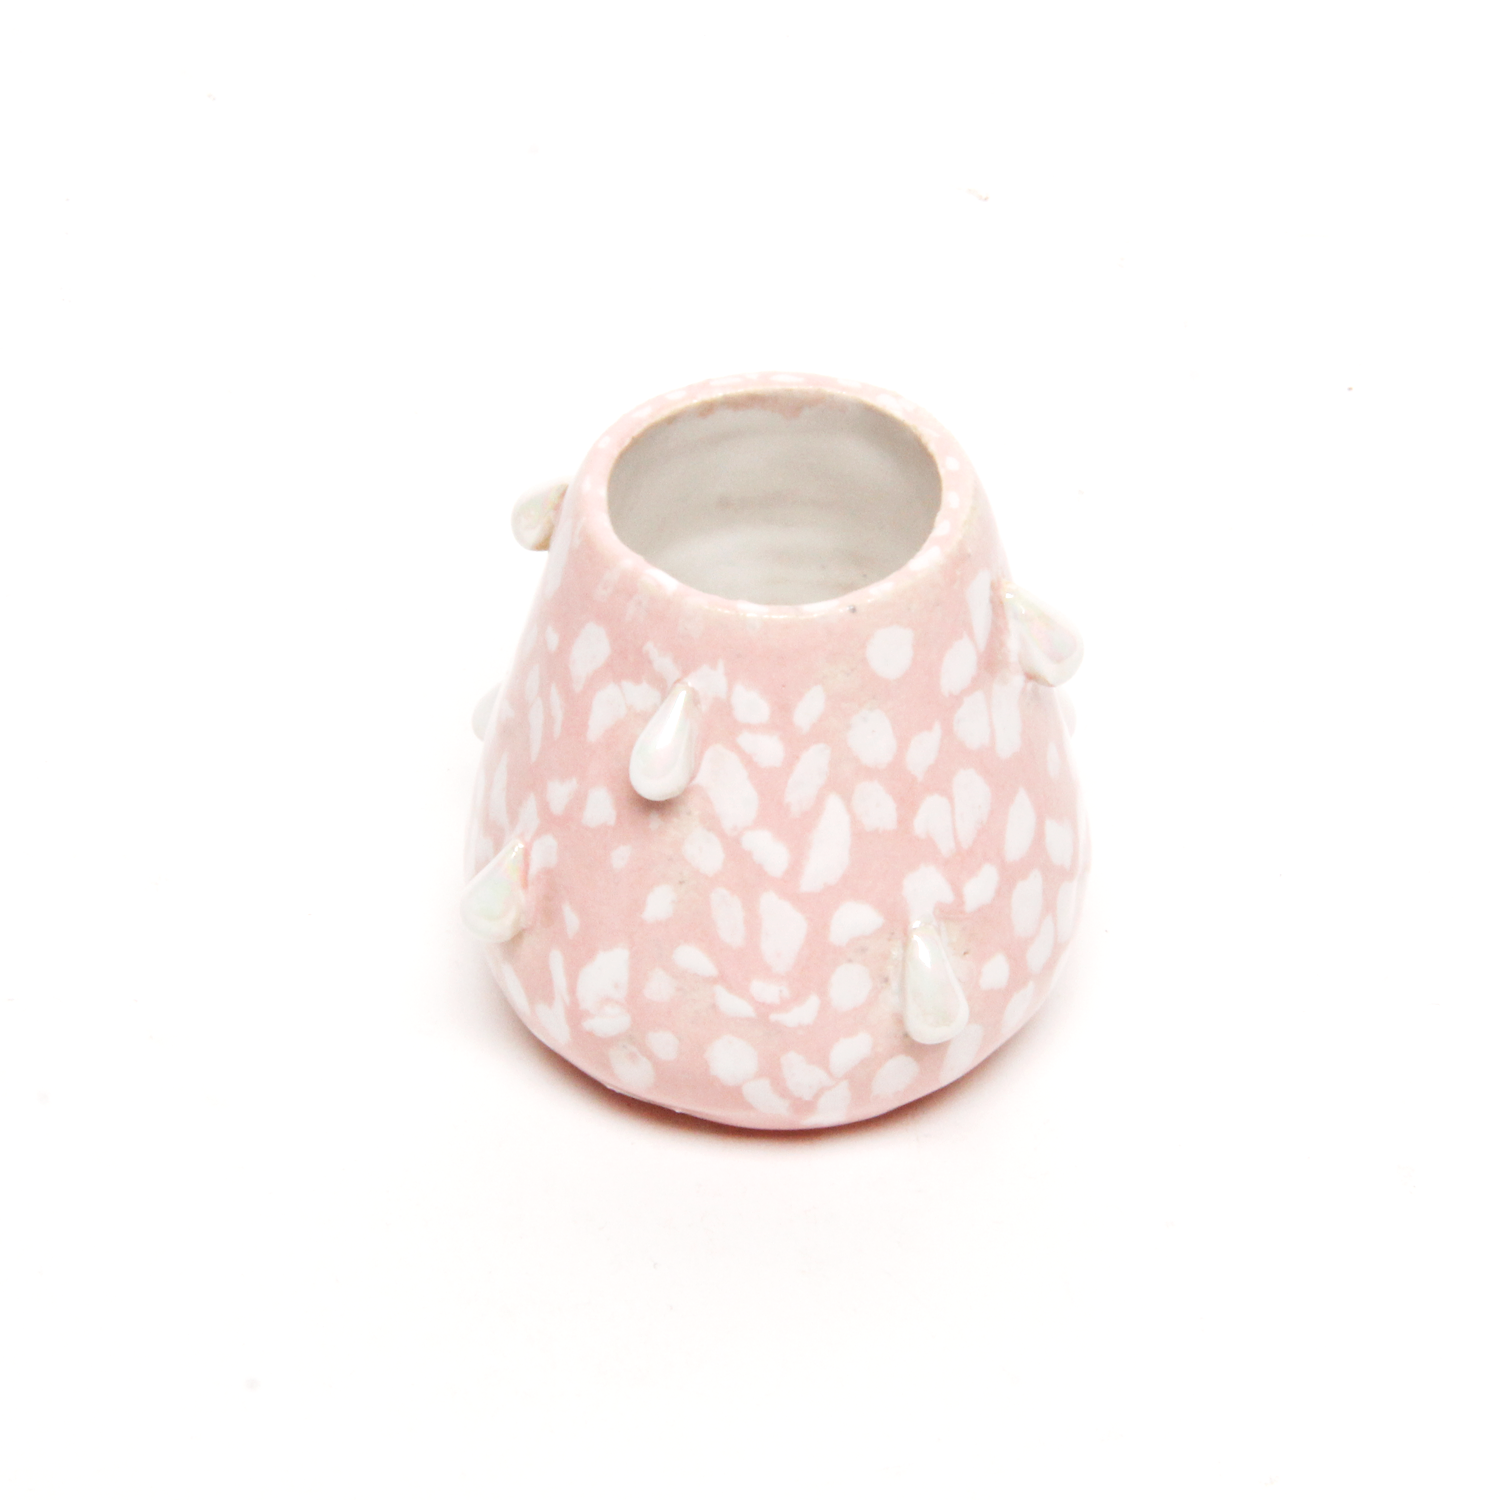 Hannah Faas: Medium Vase Product Image 3 of 3